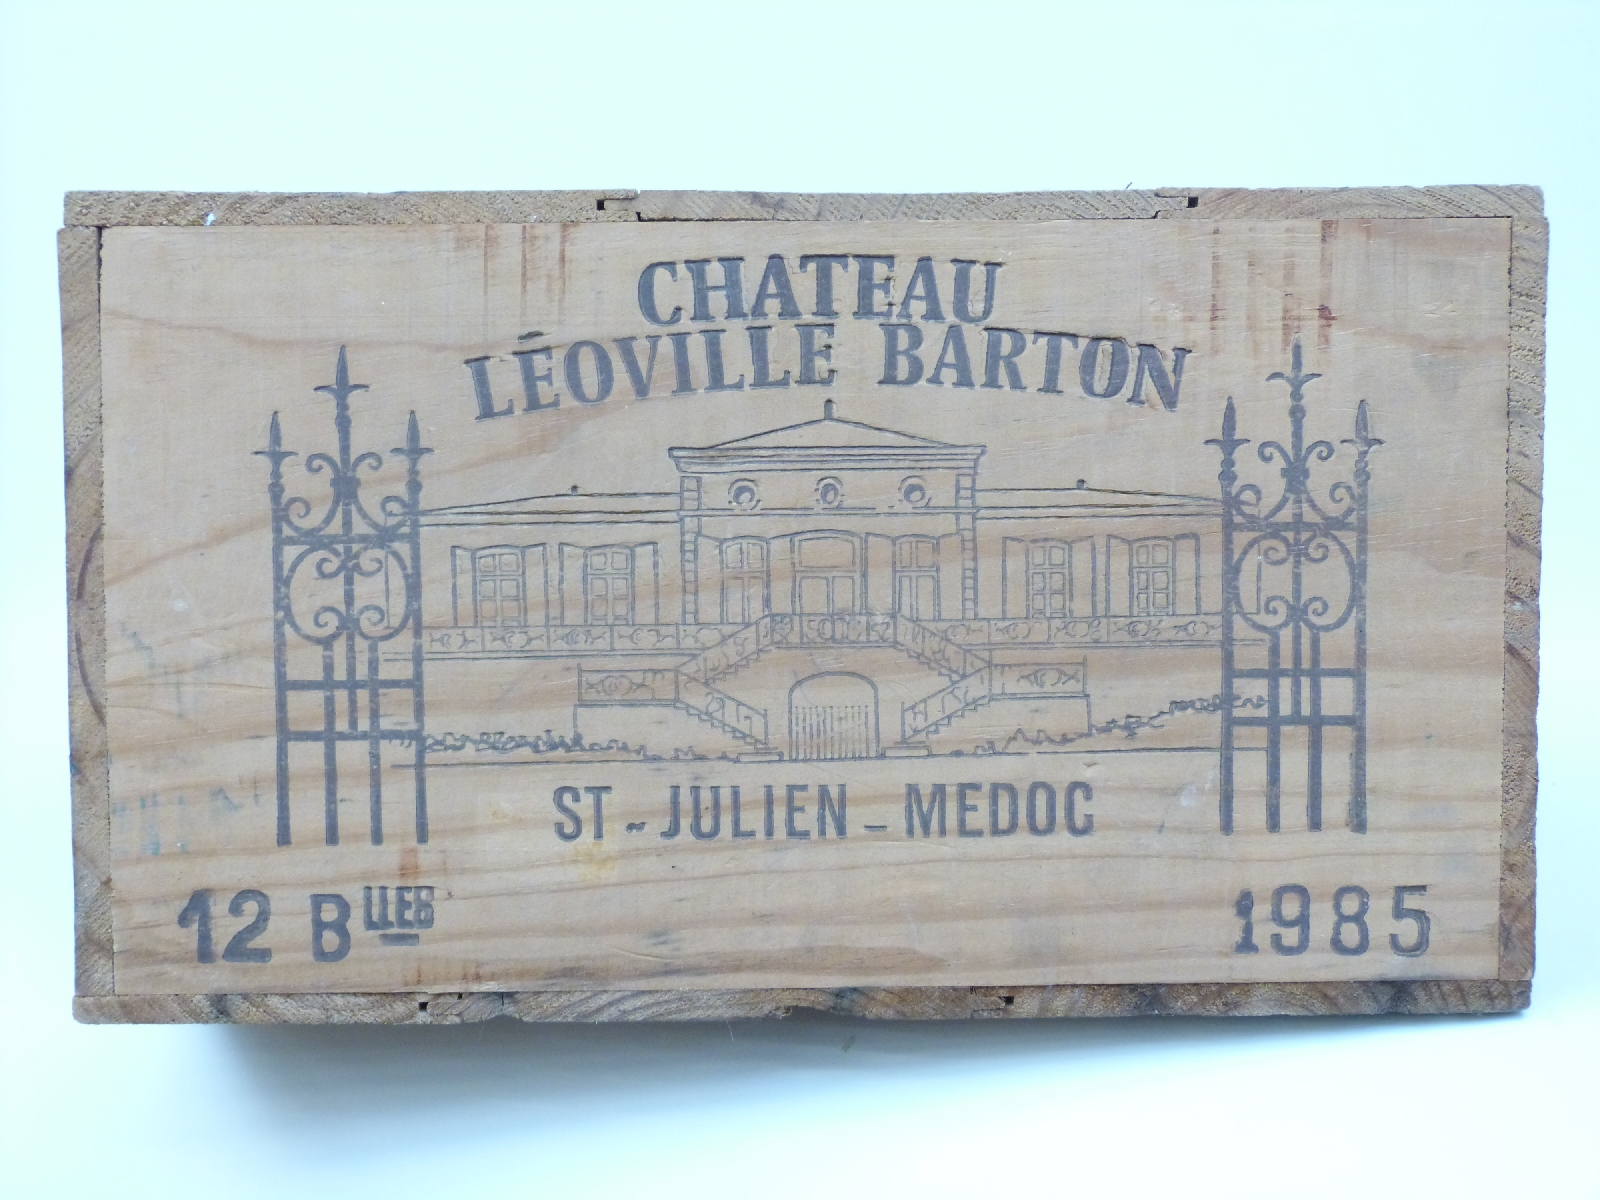 A case of 12 Chateau Leoville Barton 1985 St Julien-Medoc - Image 3 of 3